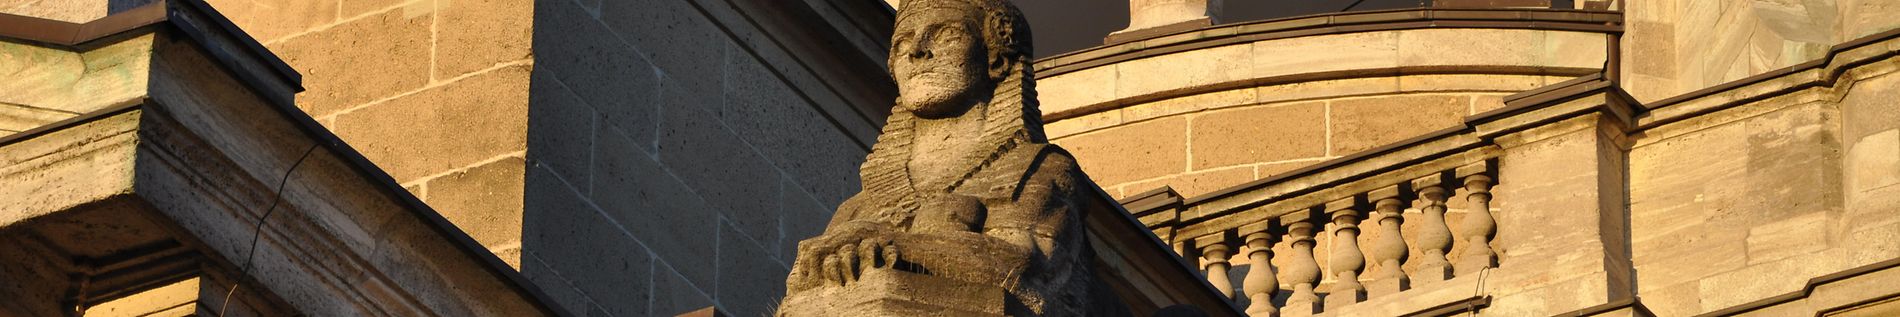 OLG Sphinx